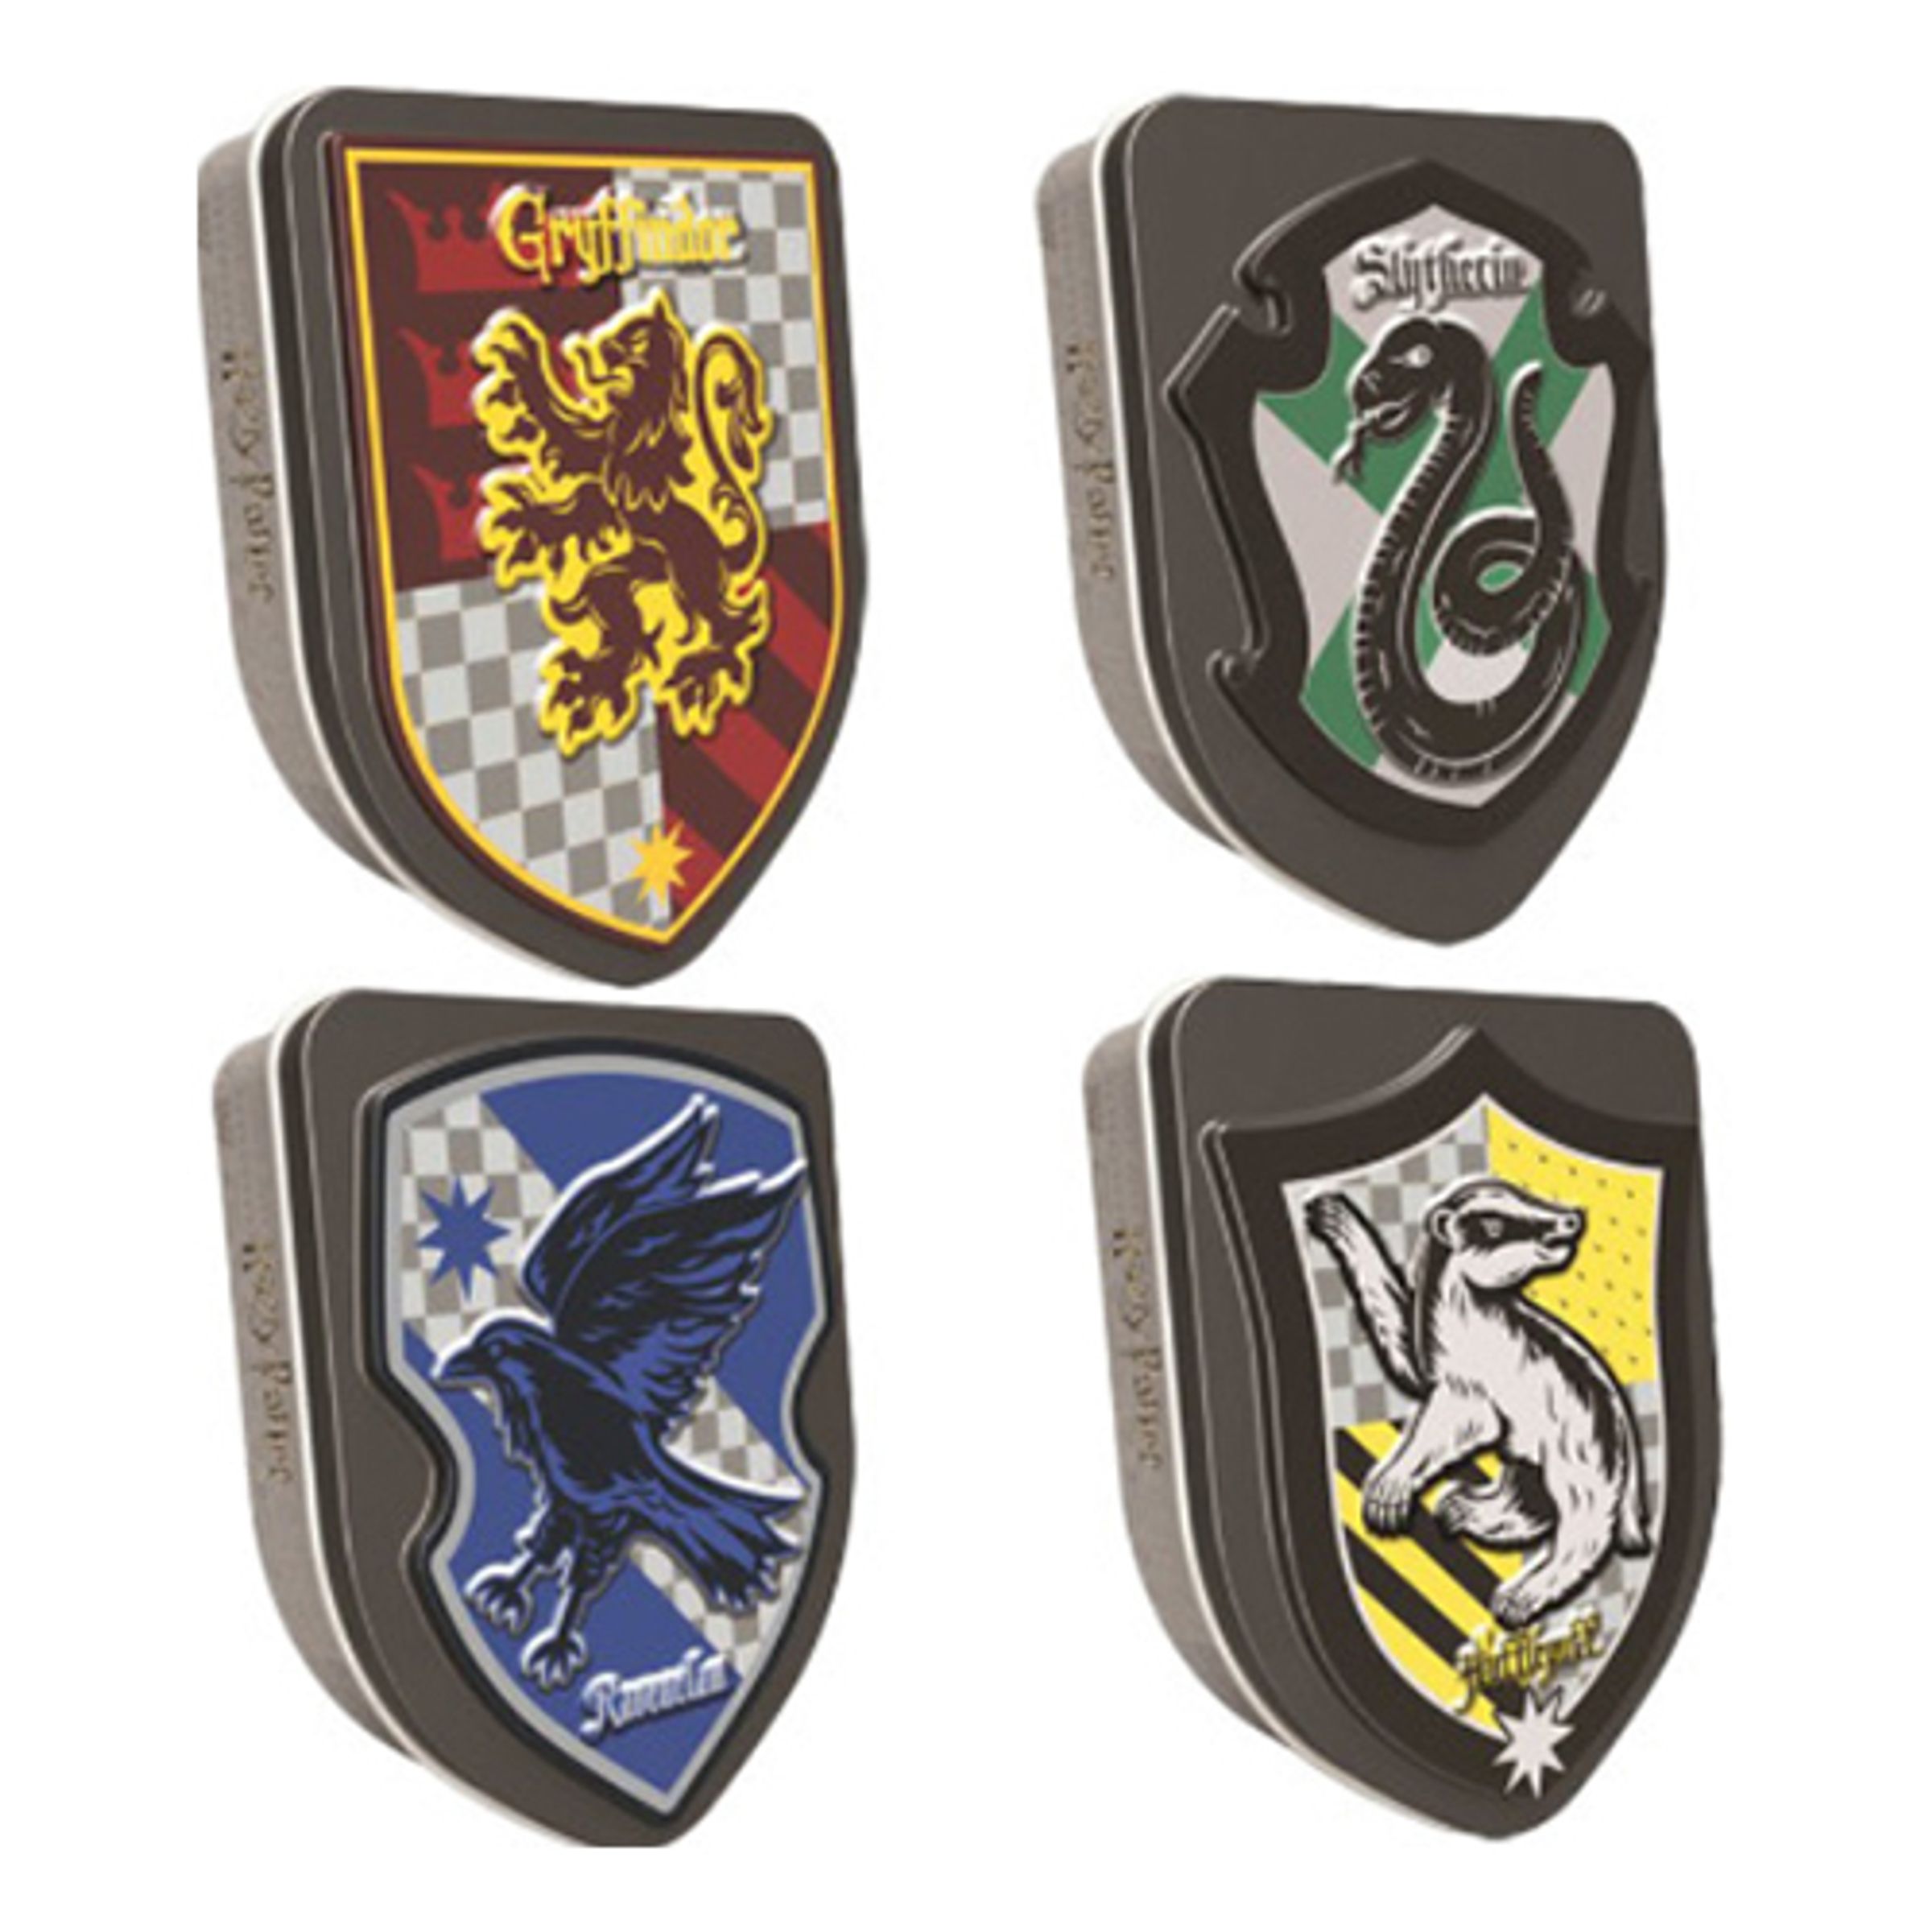 Harry Potter Crest Tins - 1-pack